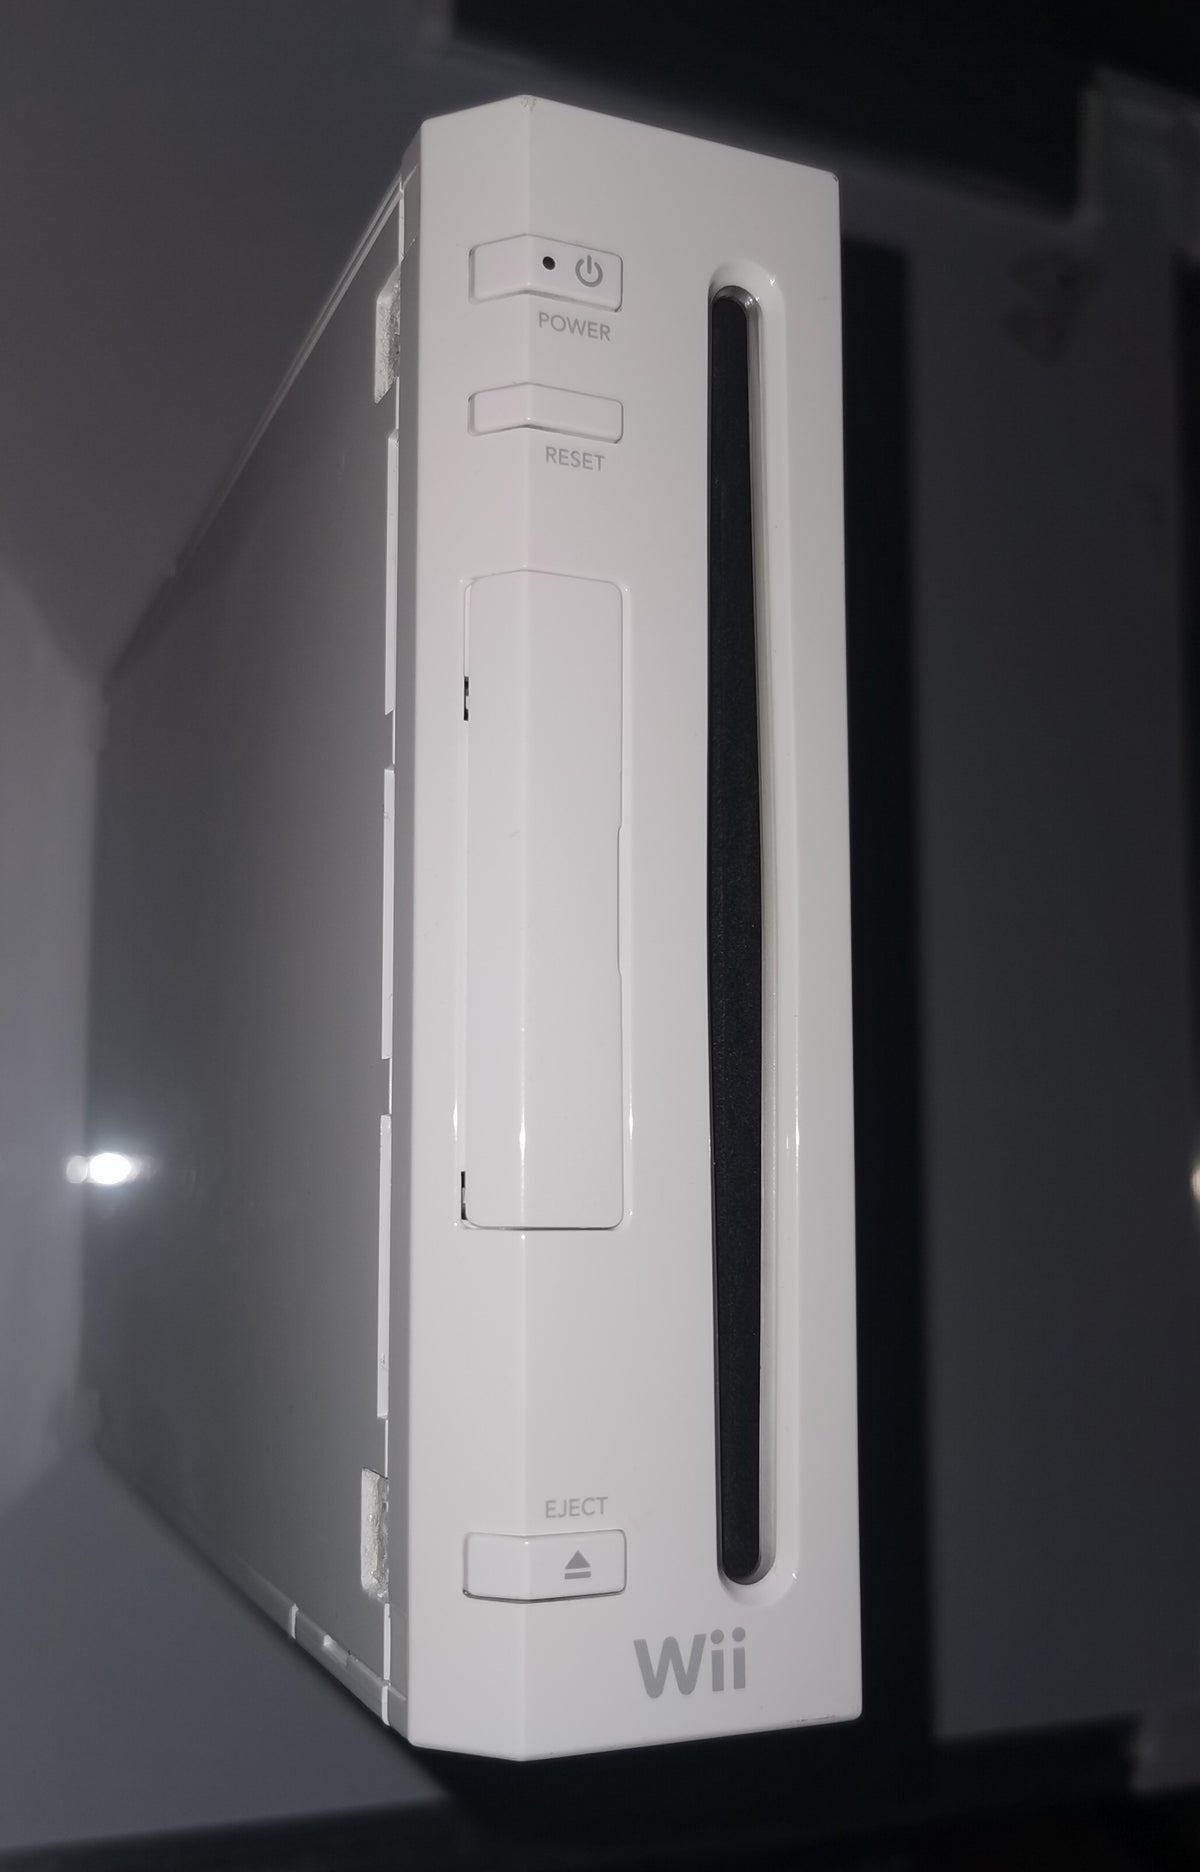 Wii Konsole weiss inkl Remote amp Zubehoer gebraucht (Nintendo Wii) [Gut]